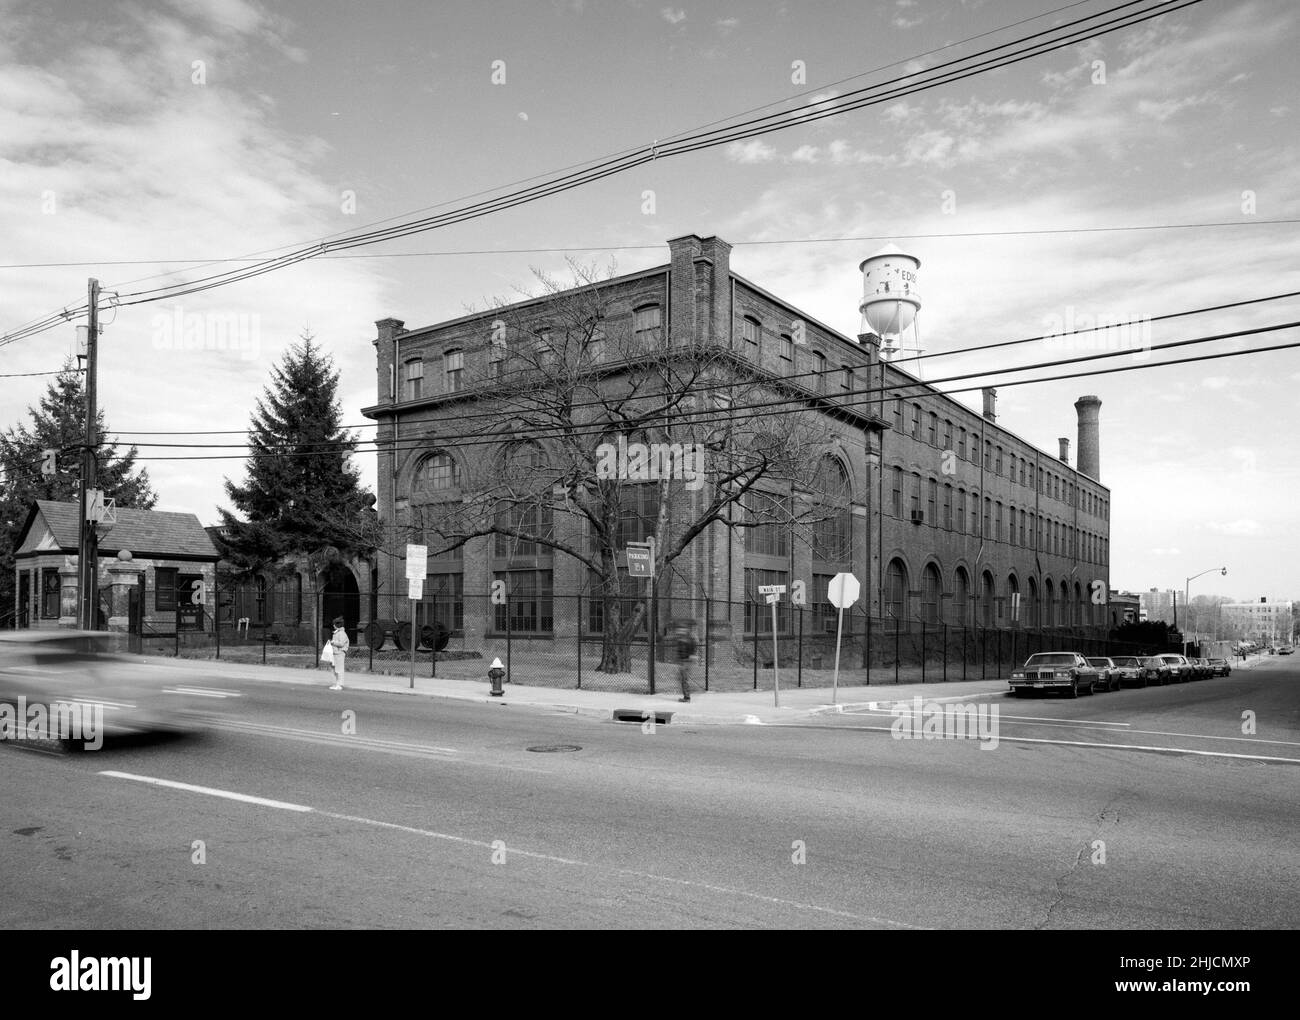 Thomas A. Edison Laboratories, Gebäude 5 (Hauptlabor), mit Wachhaus links, West Orange, Essex County, New Jersey. An diesem Standort befanden sich mehrere Produktionswerke, in denen Edison neue Technologien in der kommerziellen Produktion verwendete. Das Hauptlabor wurde ursprünglich im Jahr 1887 gebaut. Foto ca. 1968. Stockfoto